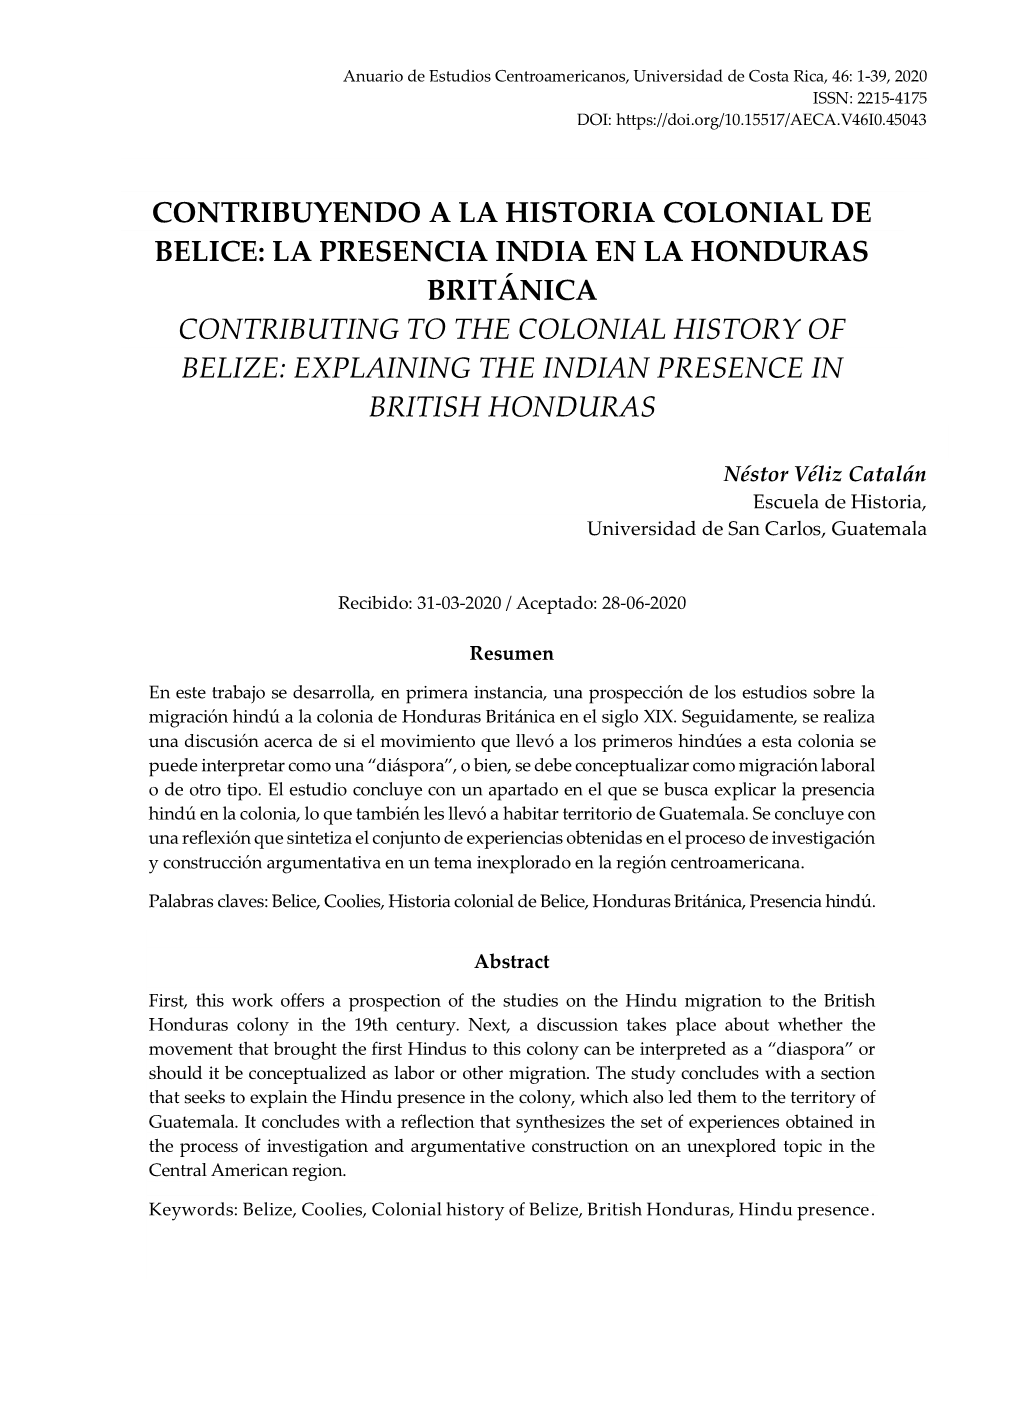 La Presencia India En La Honduras Británica Contributing to the Colonial History of Belize: Explaining the Indian Presence in British Honduras